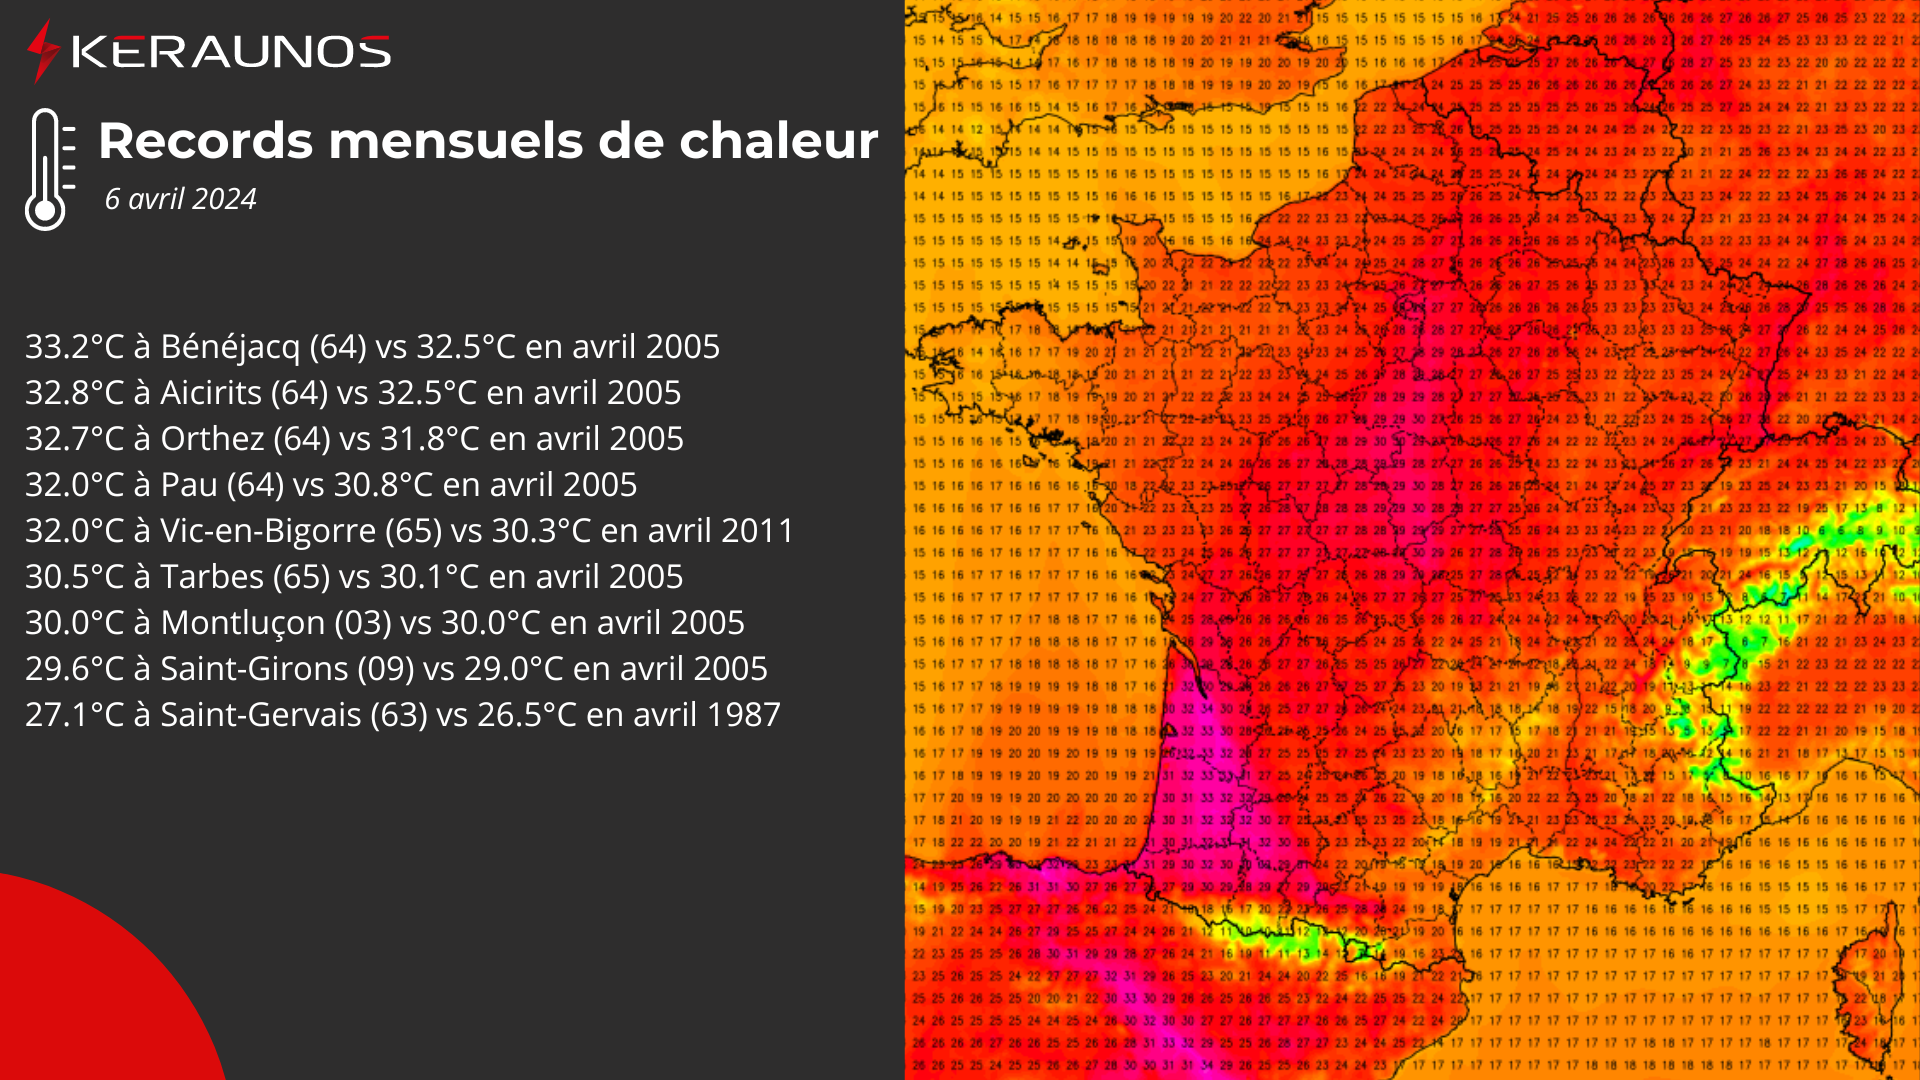 <p>Les températures maximales ont dépassé localement 33°C dans le sud Aquitaine ce samedi. Des records de chaleur mensuels sont battus le long des Pyrénées par effet de foehn, des Pyrénées-Atlantiques à l'Ariège. D'autres records sont également tombés sur le centre du pays.</p>
<p>A noter un remarquable 29.9°C à Bâle-Mulhouse, à 0.1°C du record mensuel du 21 avril 1968. Ce record pourrait être battu demain dimanche.</p>